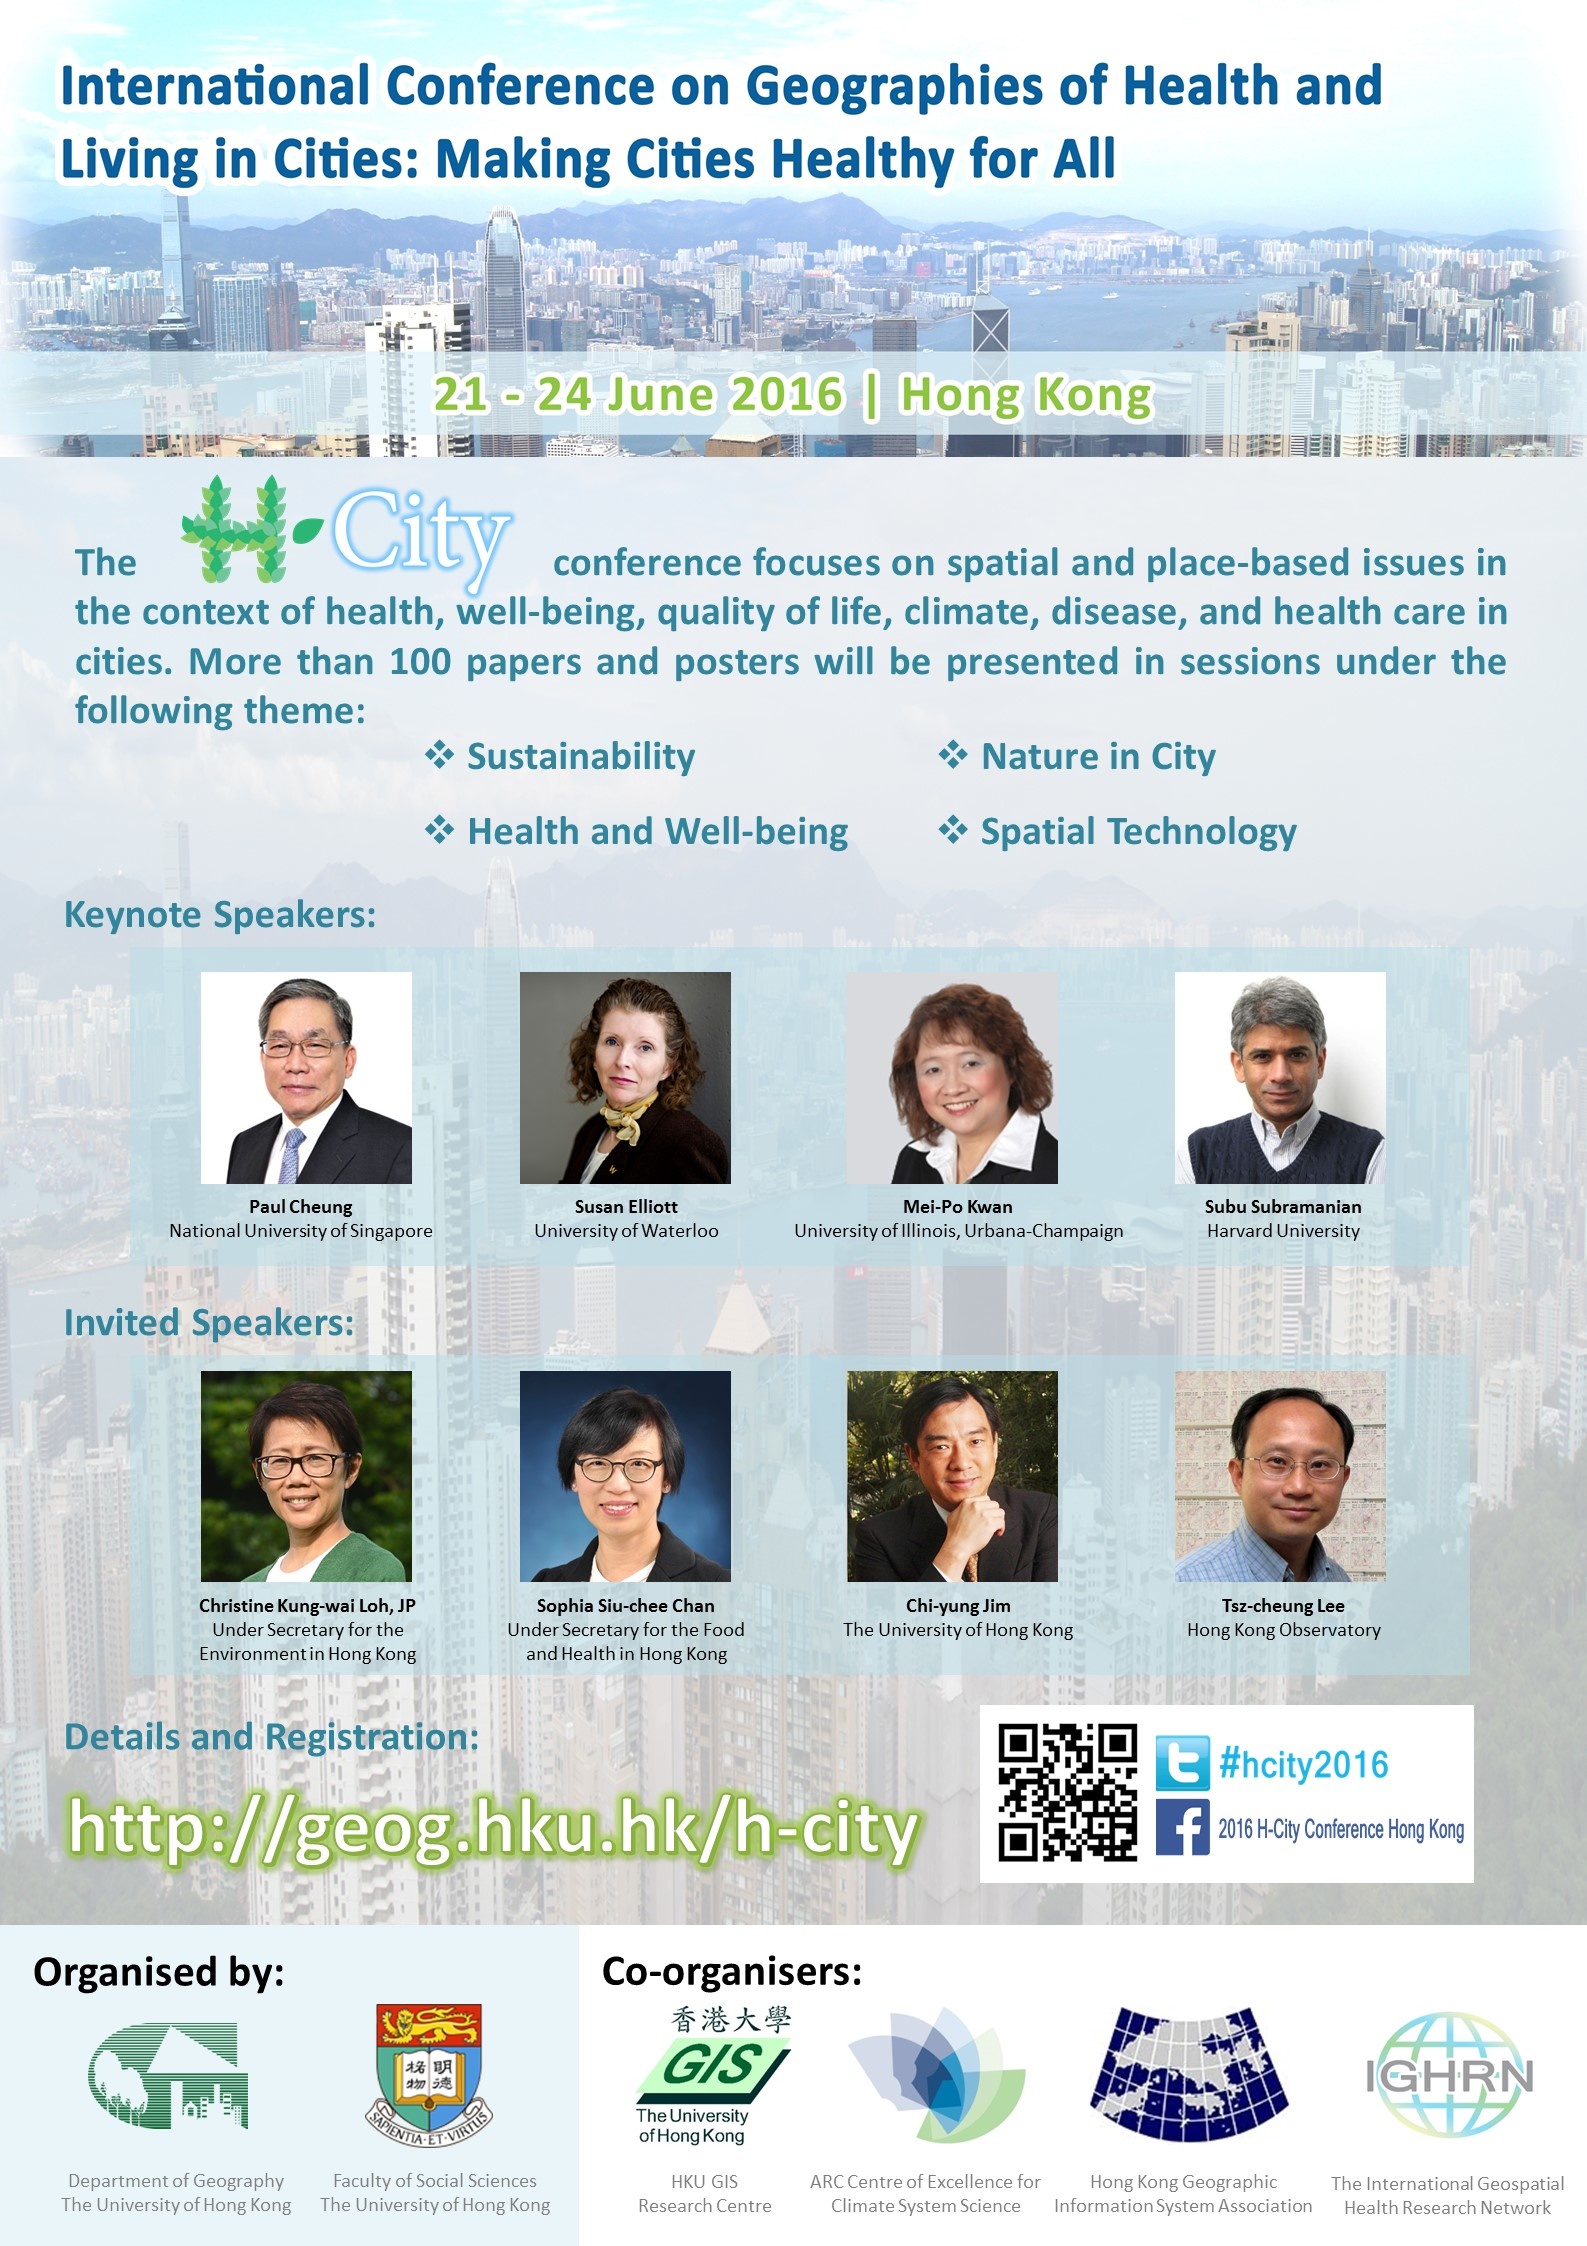 2016 H-City Conference Hong Kong (21 - 24 June 2016)